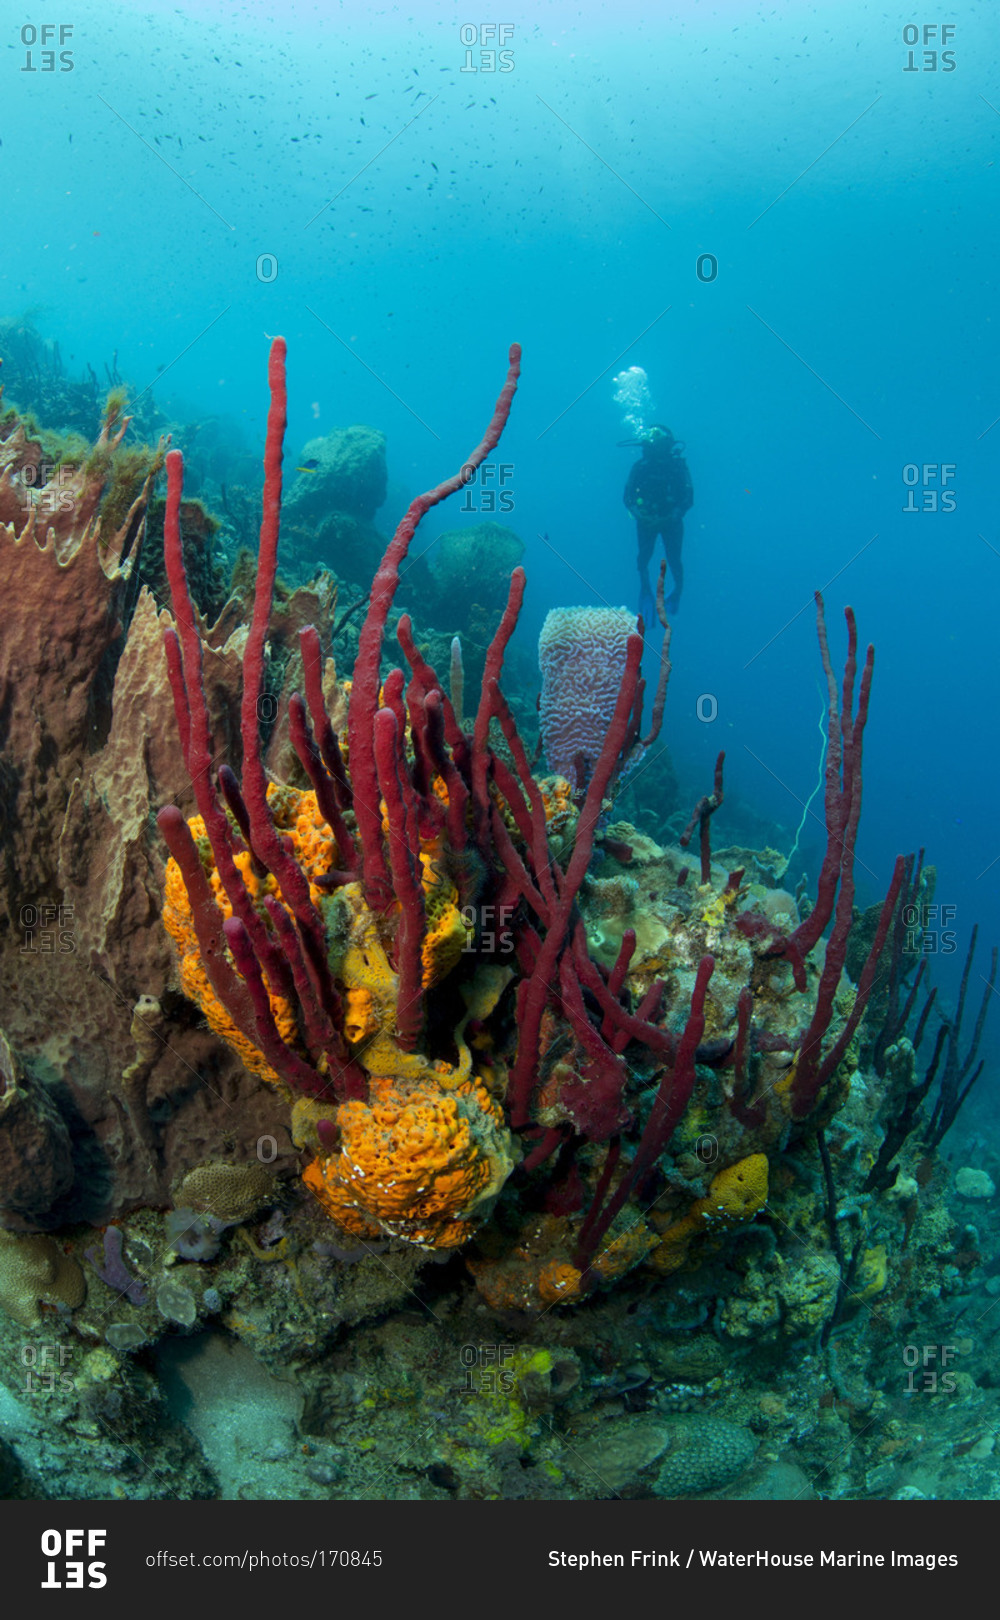 Female scuba diver approaches bouquet of sponges